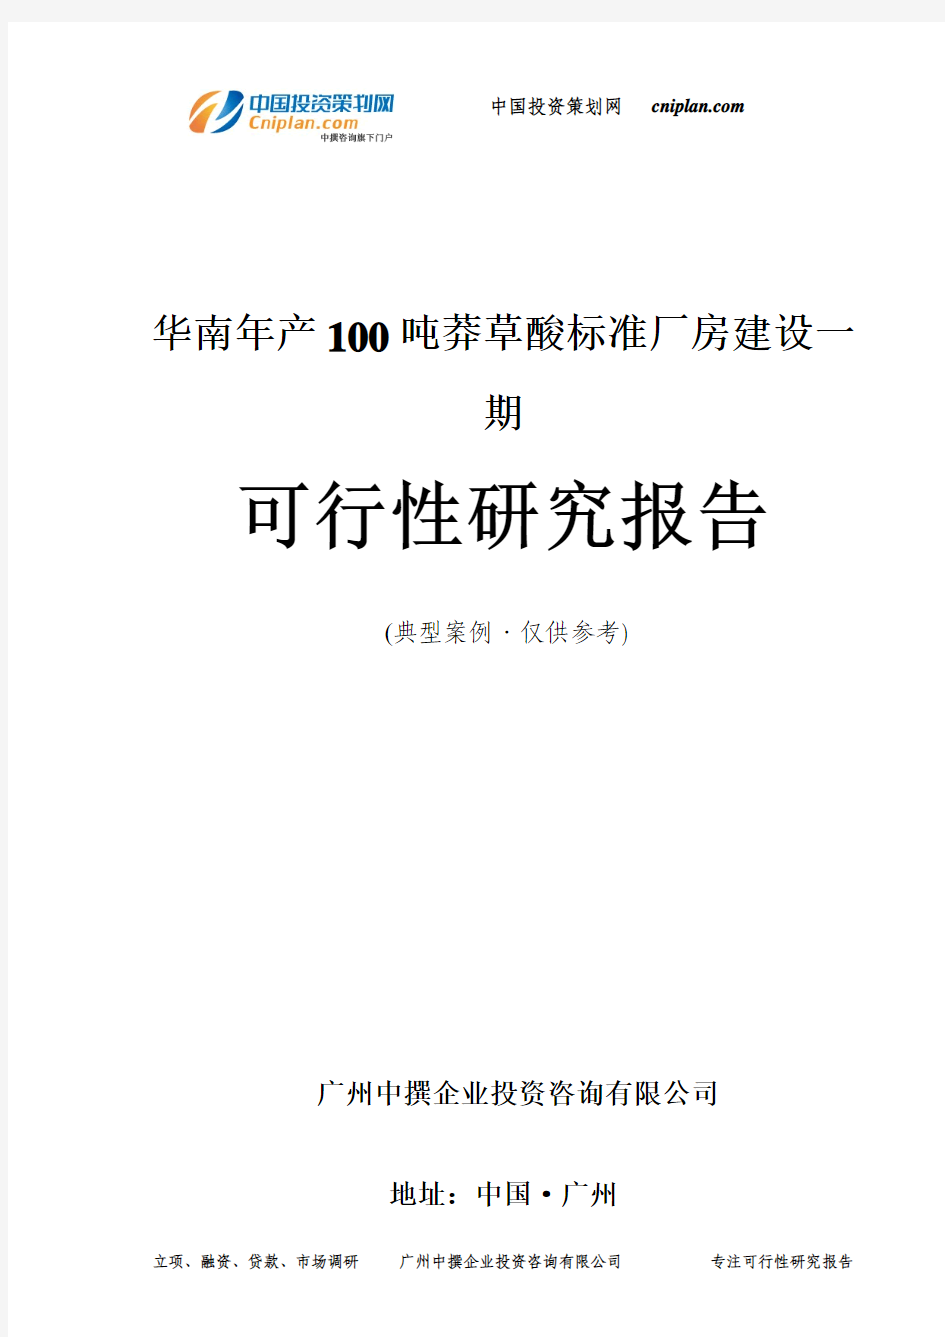 华南年产100吨莽草酸标准厂房建设一期可行性研究报告-广州中撰咨询